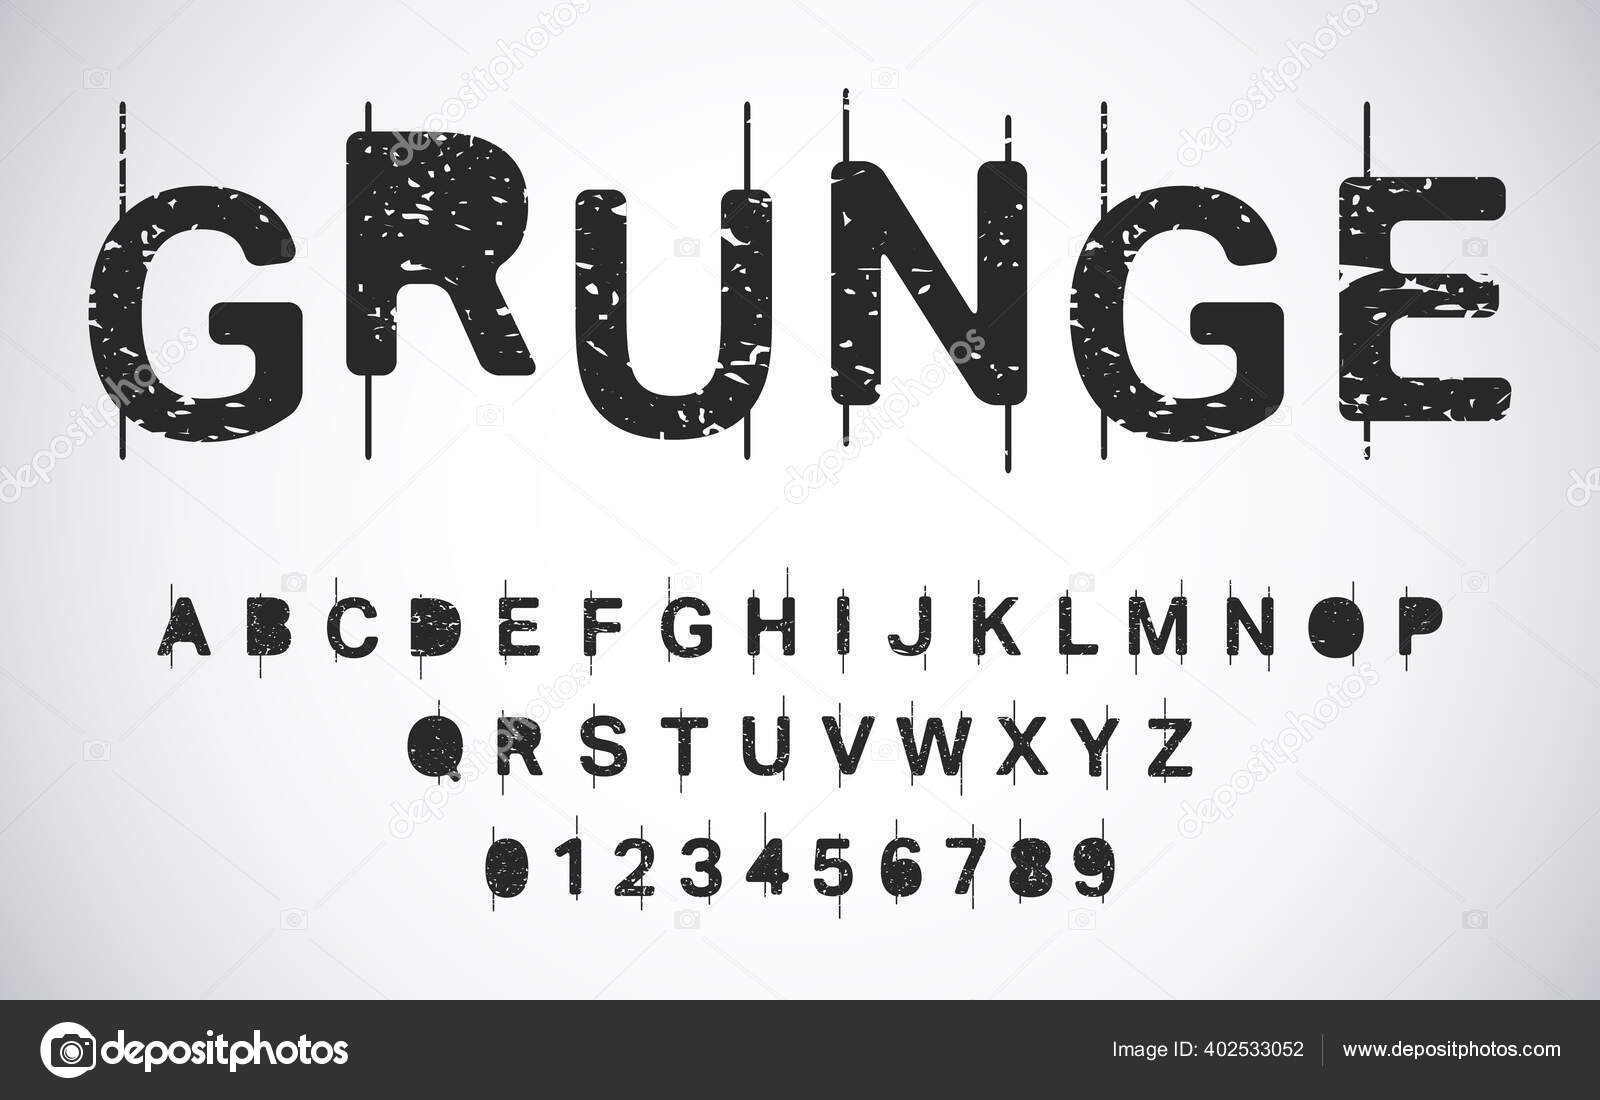 Vorlage Fur Grunge Alphabet Bedrangte Typografie Buchstaben Und Zahlen Gesetzt Vektorillustration Stockvektor C Bobevv